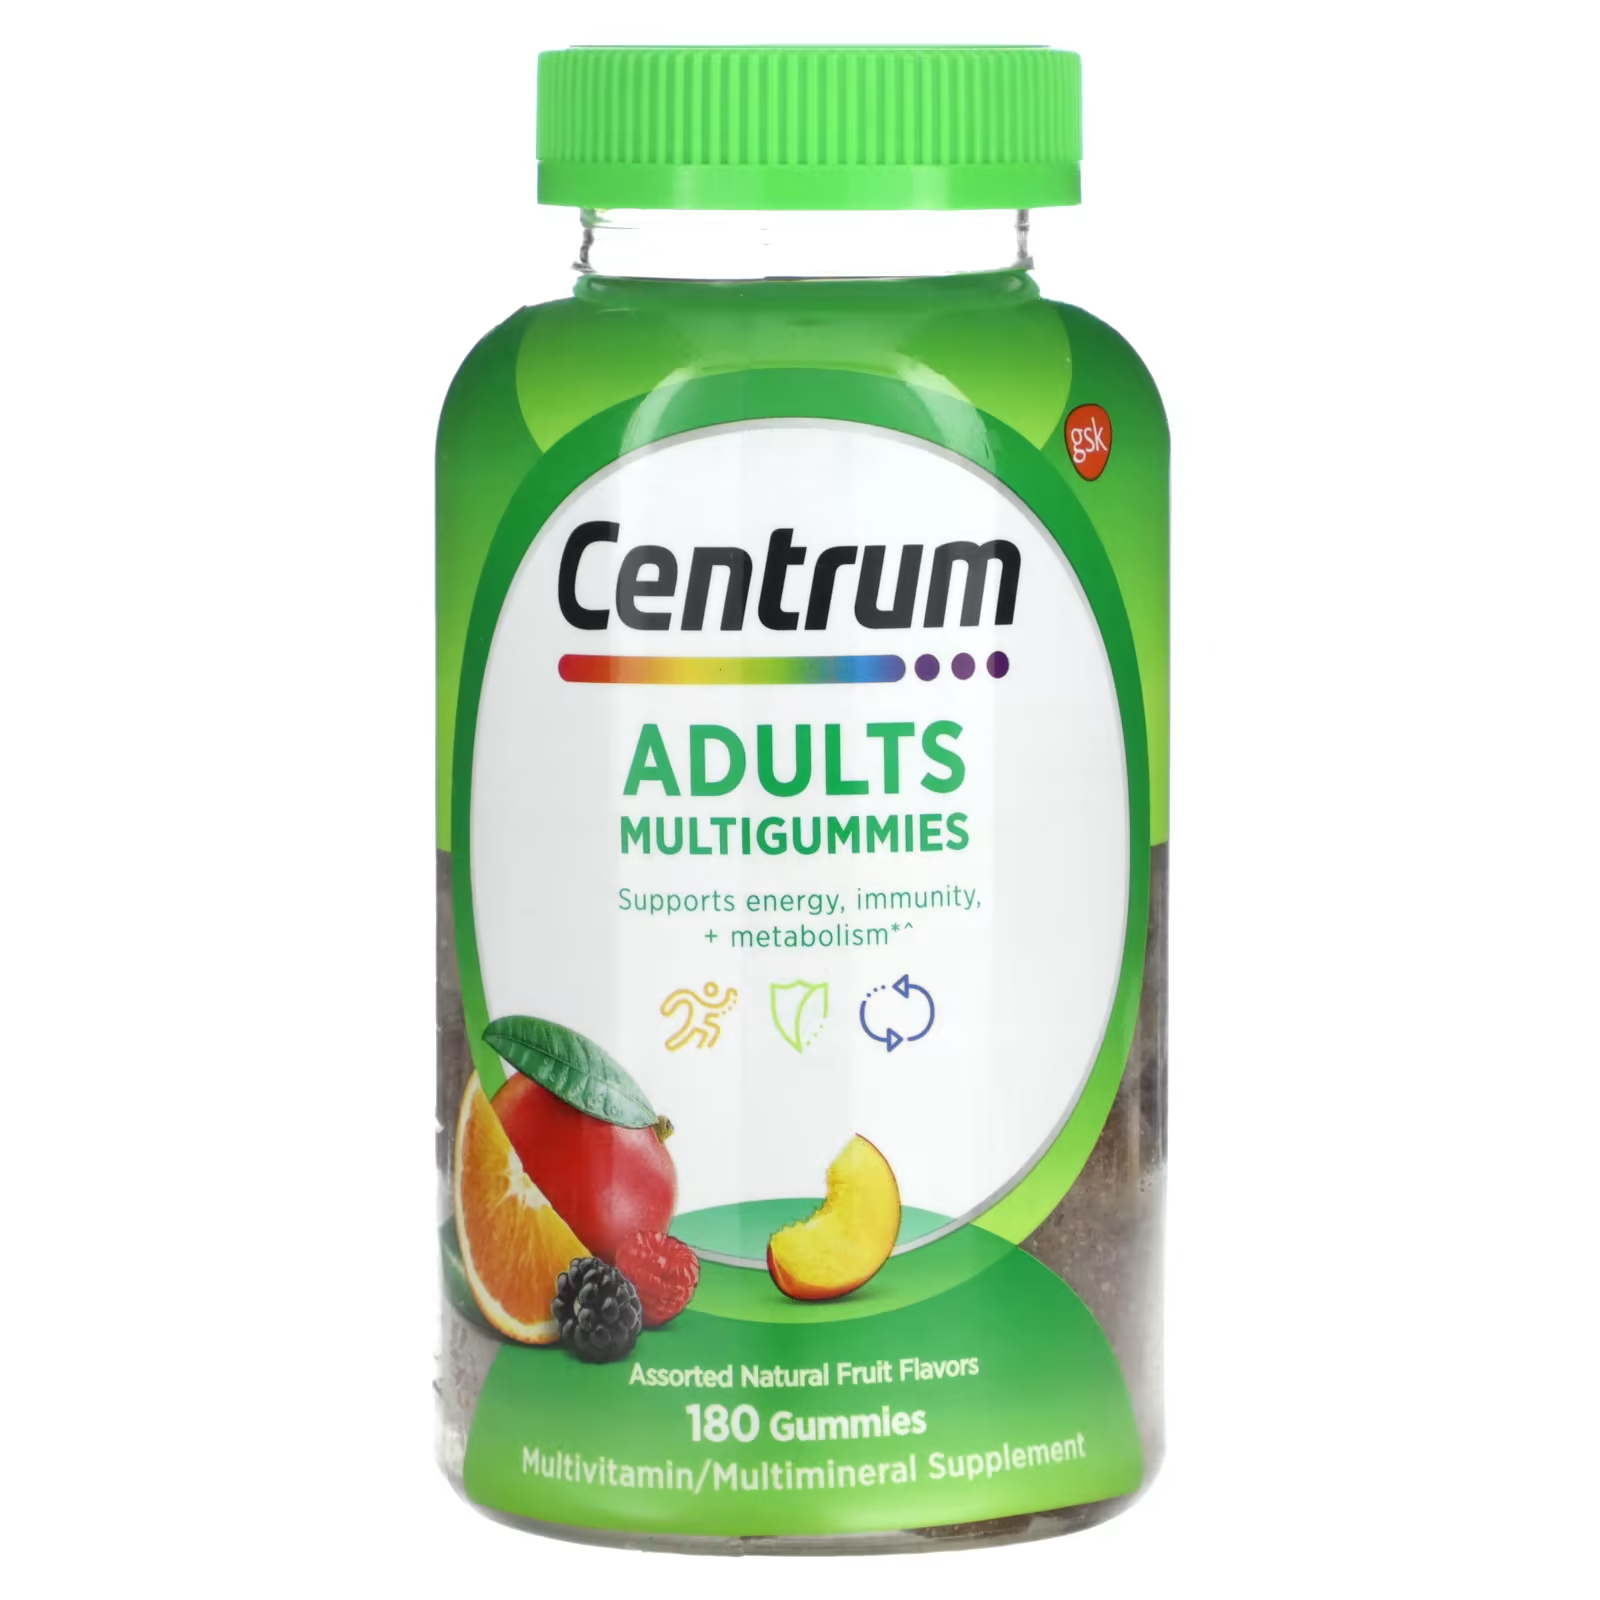 Мультивитаминная добавка Centrum Adults Multigummies ассорти из натуральных фруктов, 180 жевательных конфет